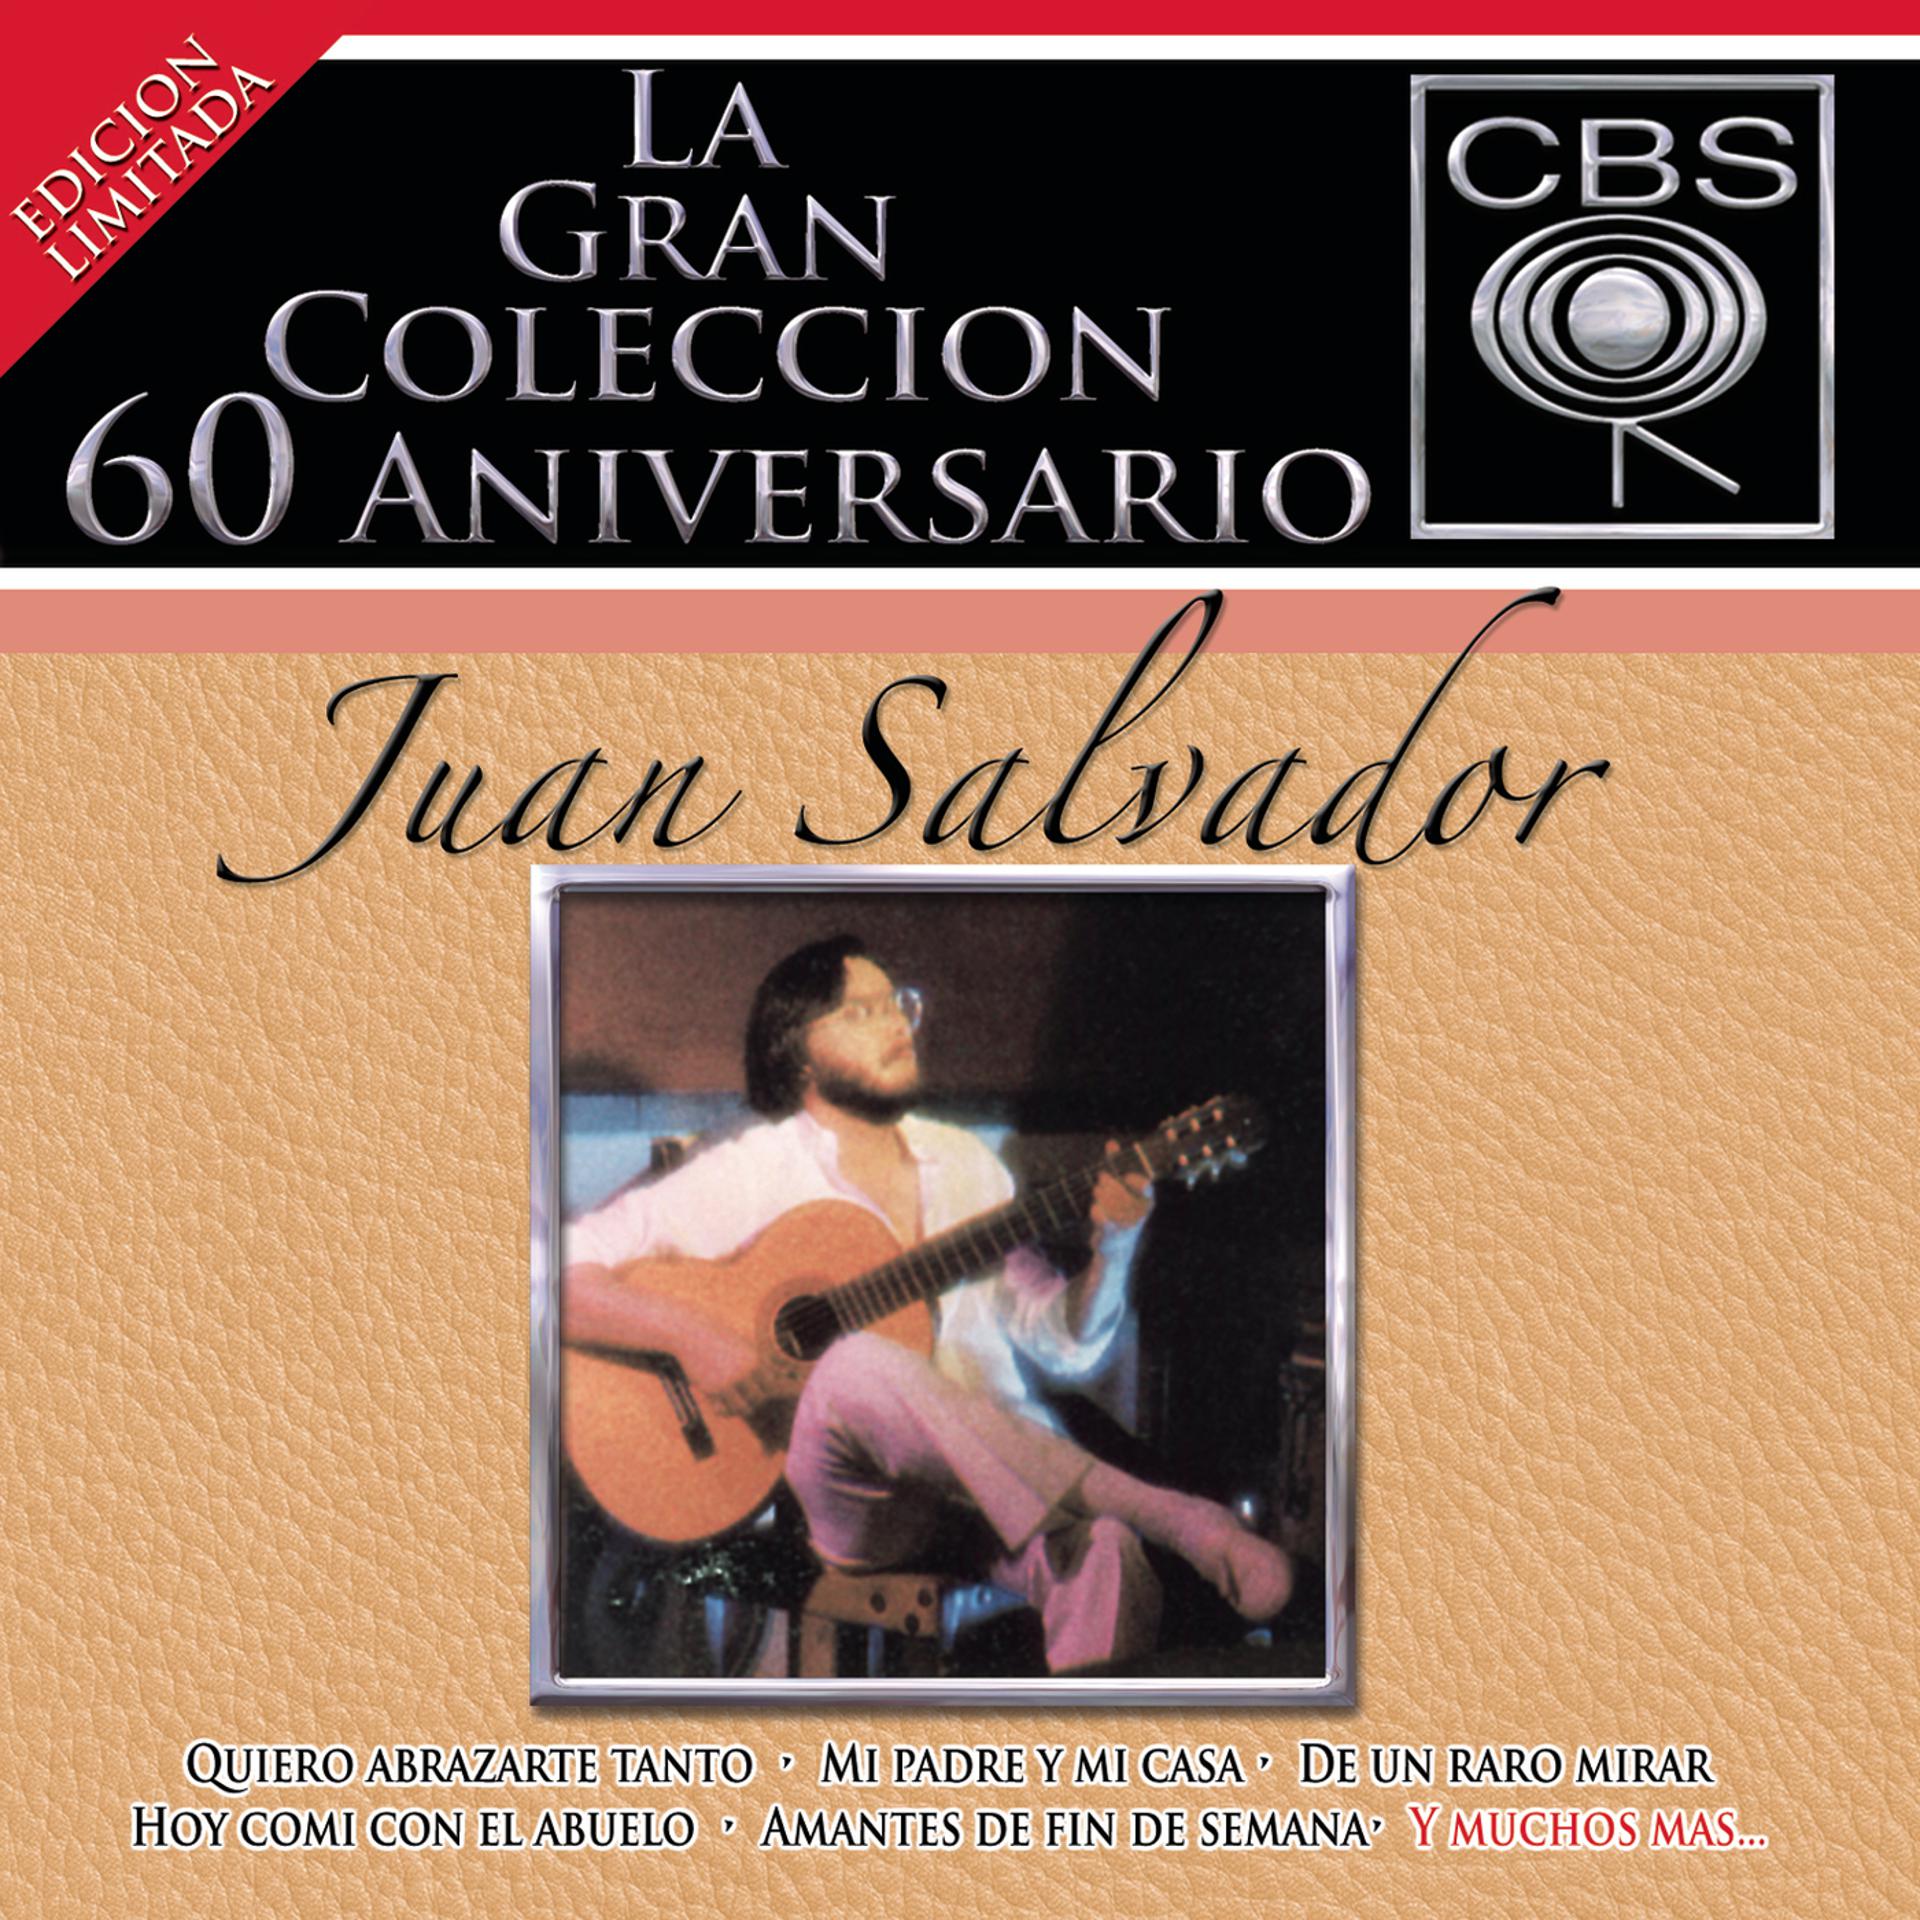 Постер альбома La Gran Coleccion Del 60 Aniversario CBS -Juan Salvador